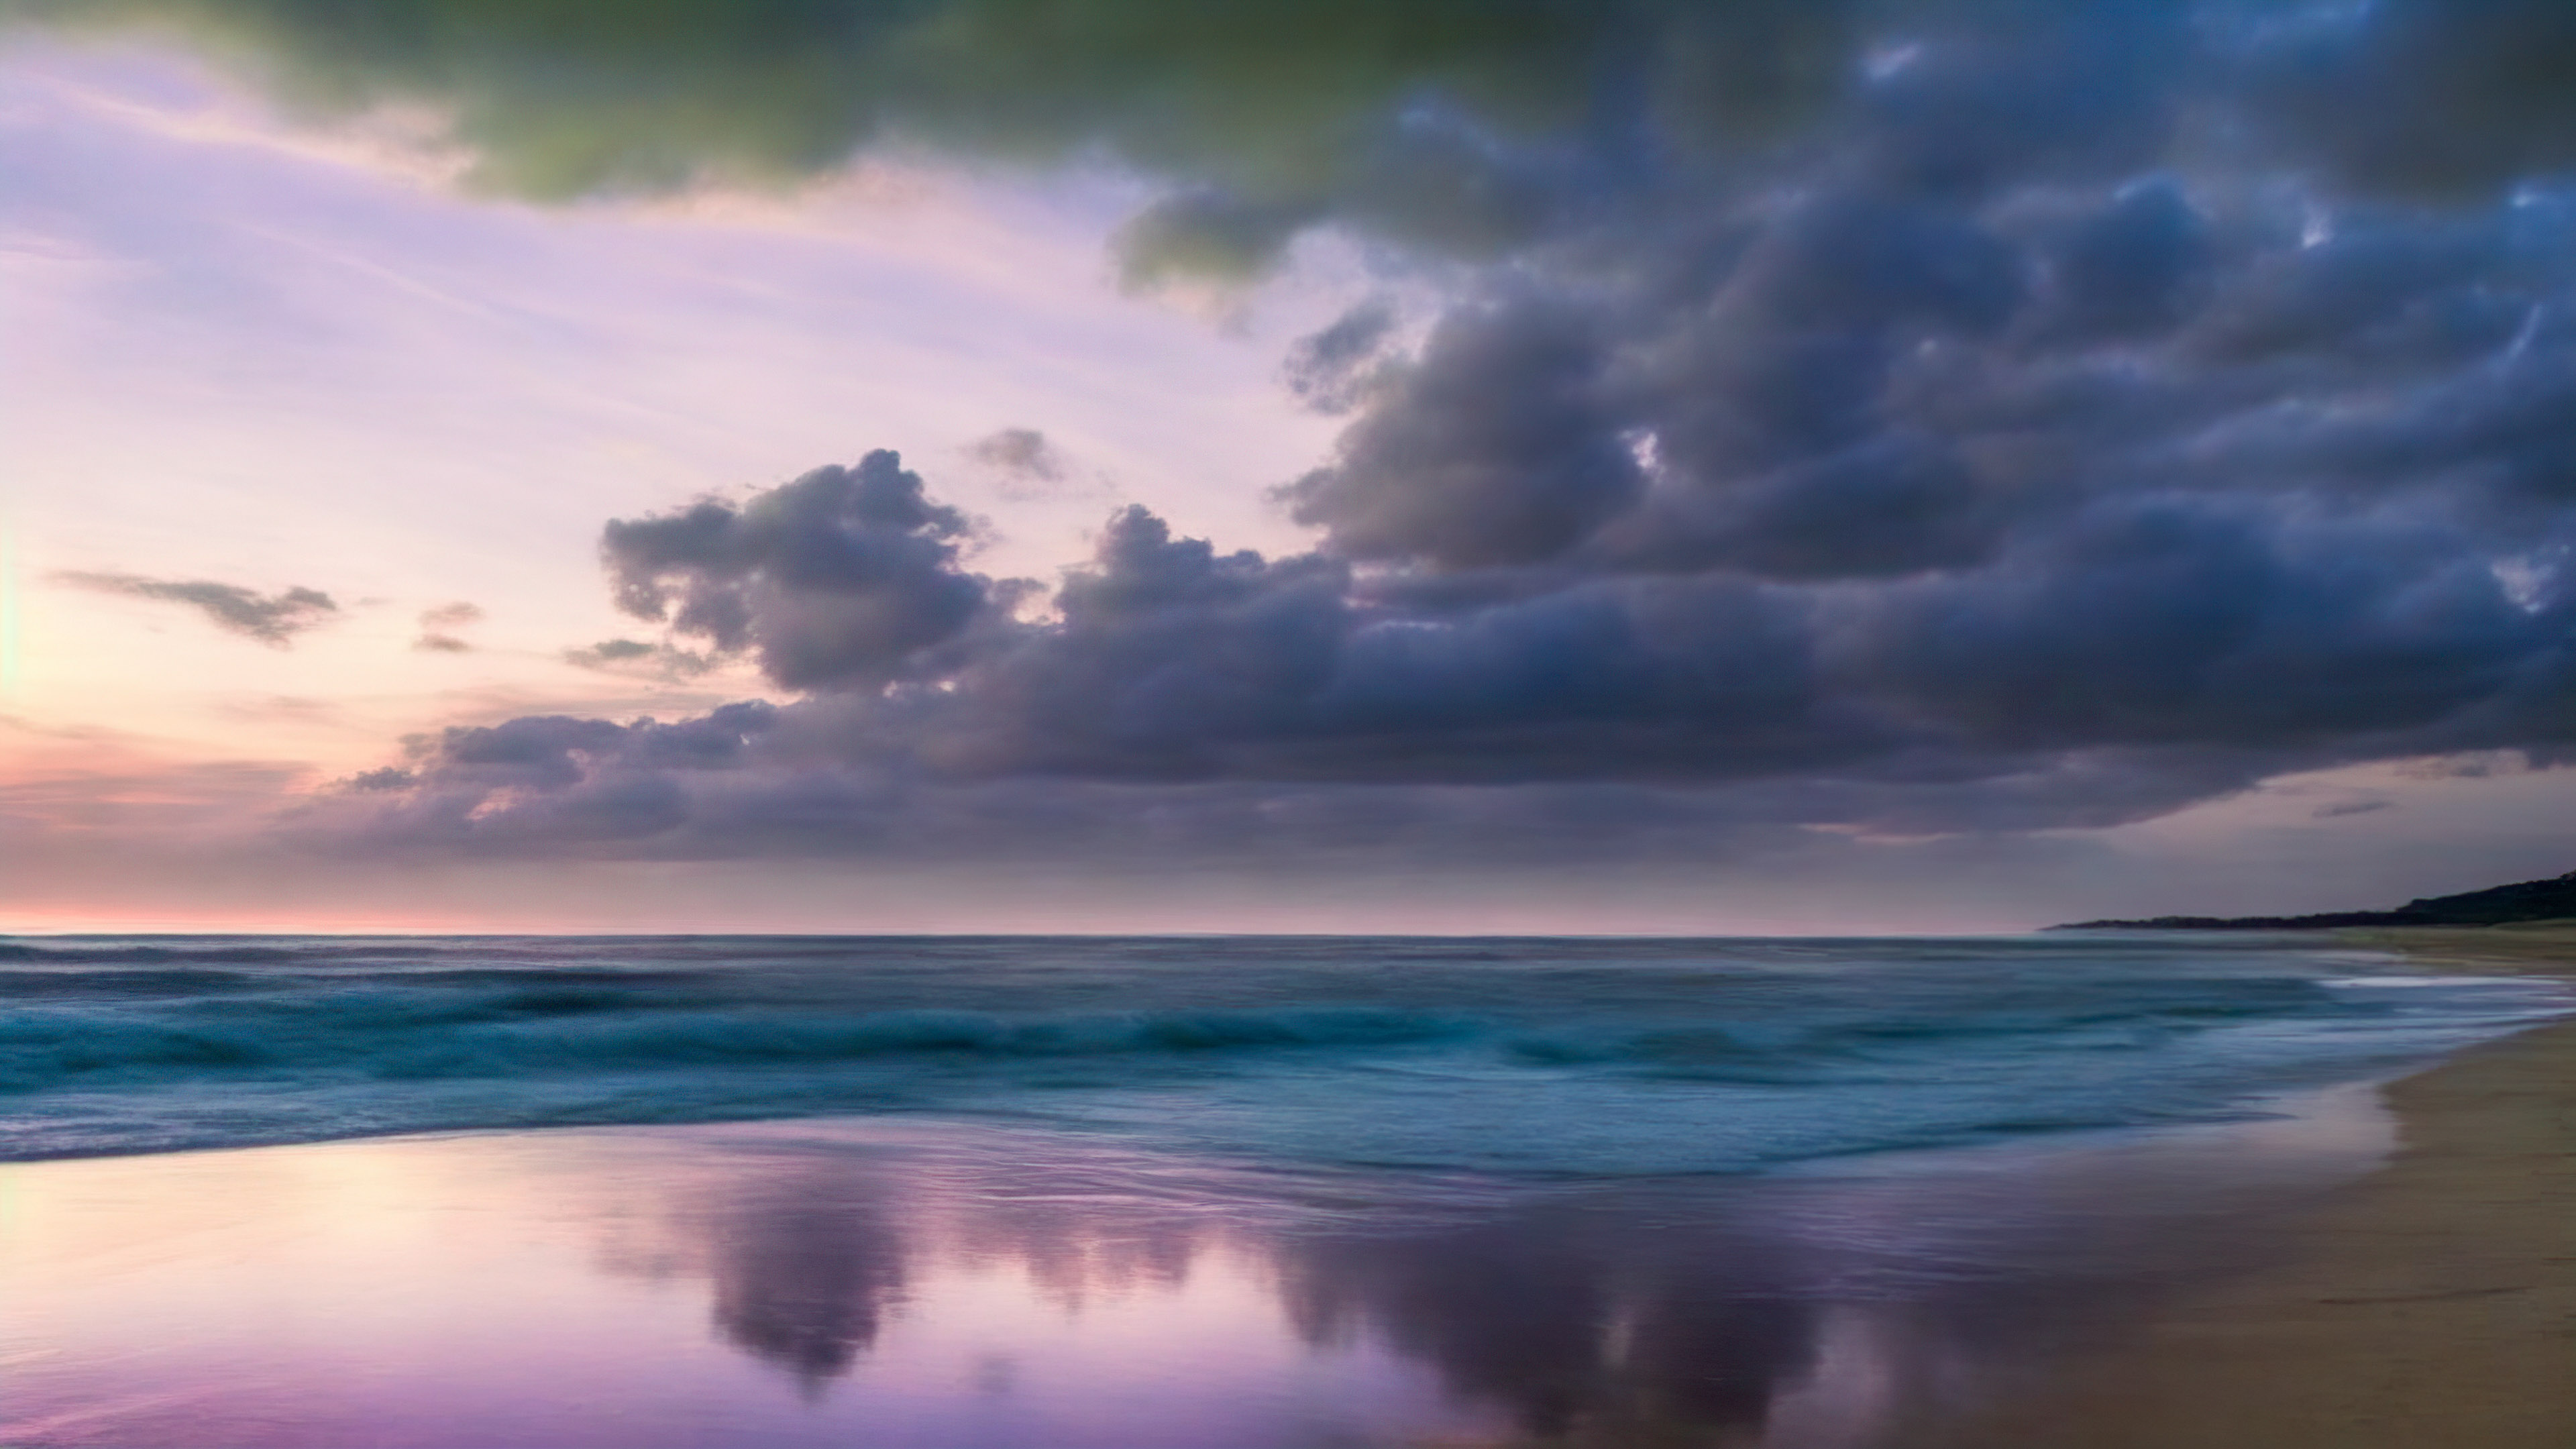 Perdez-vous dans la magie de notre fond d'écran en HD des paysages dépeignant une plage tranquille au crépuscule, avec le ciel peint en nuances de violet et de rose, et laissez votre écran vous transporter vers un lieu de paix et de sérénité.